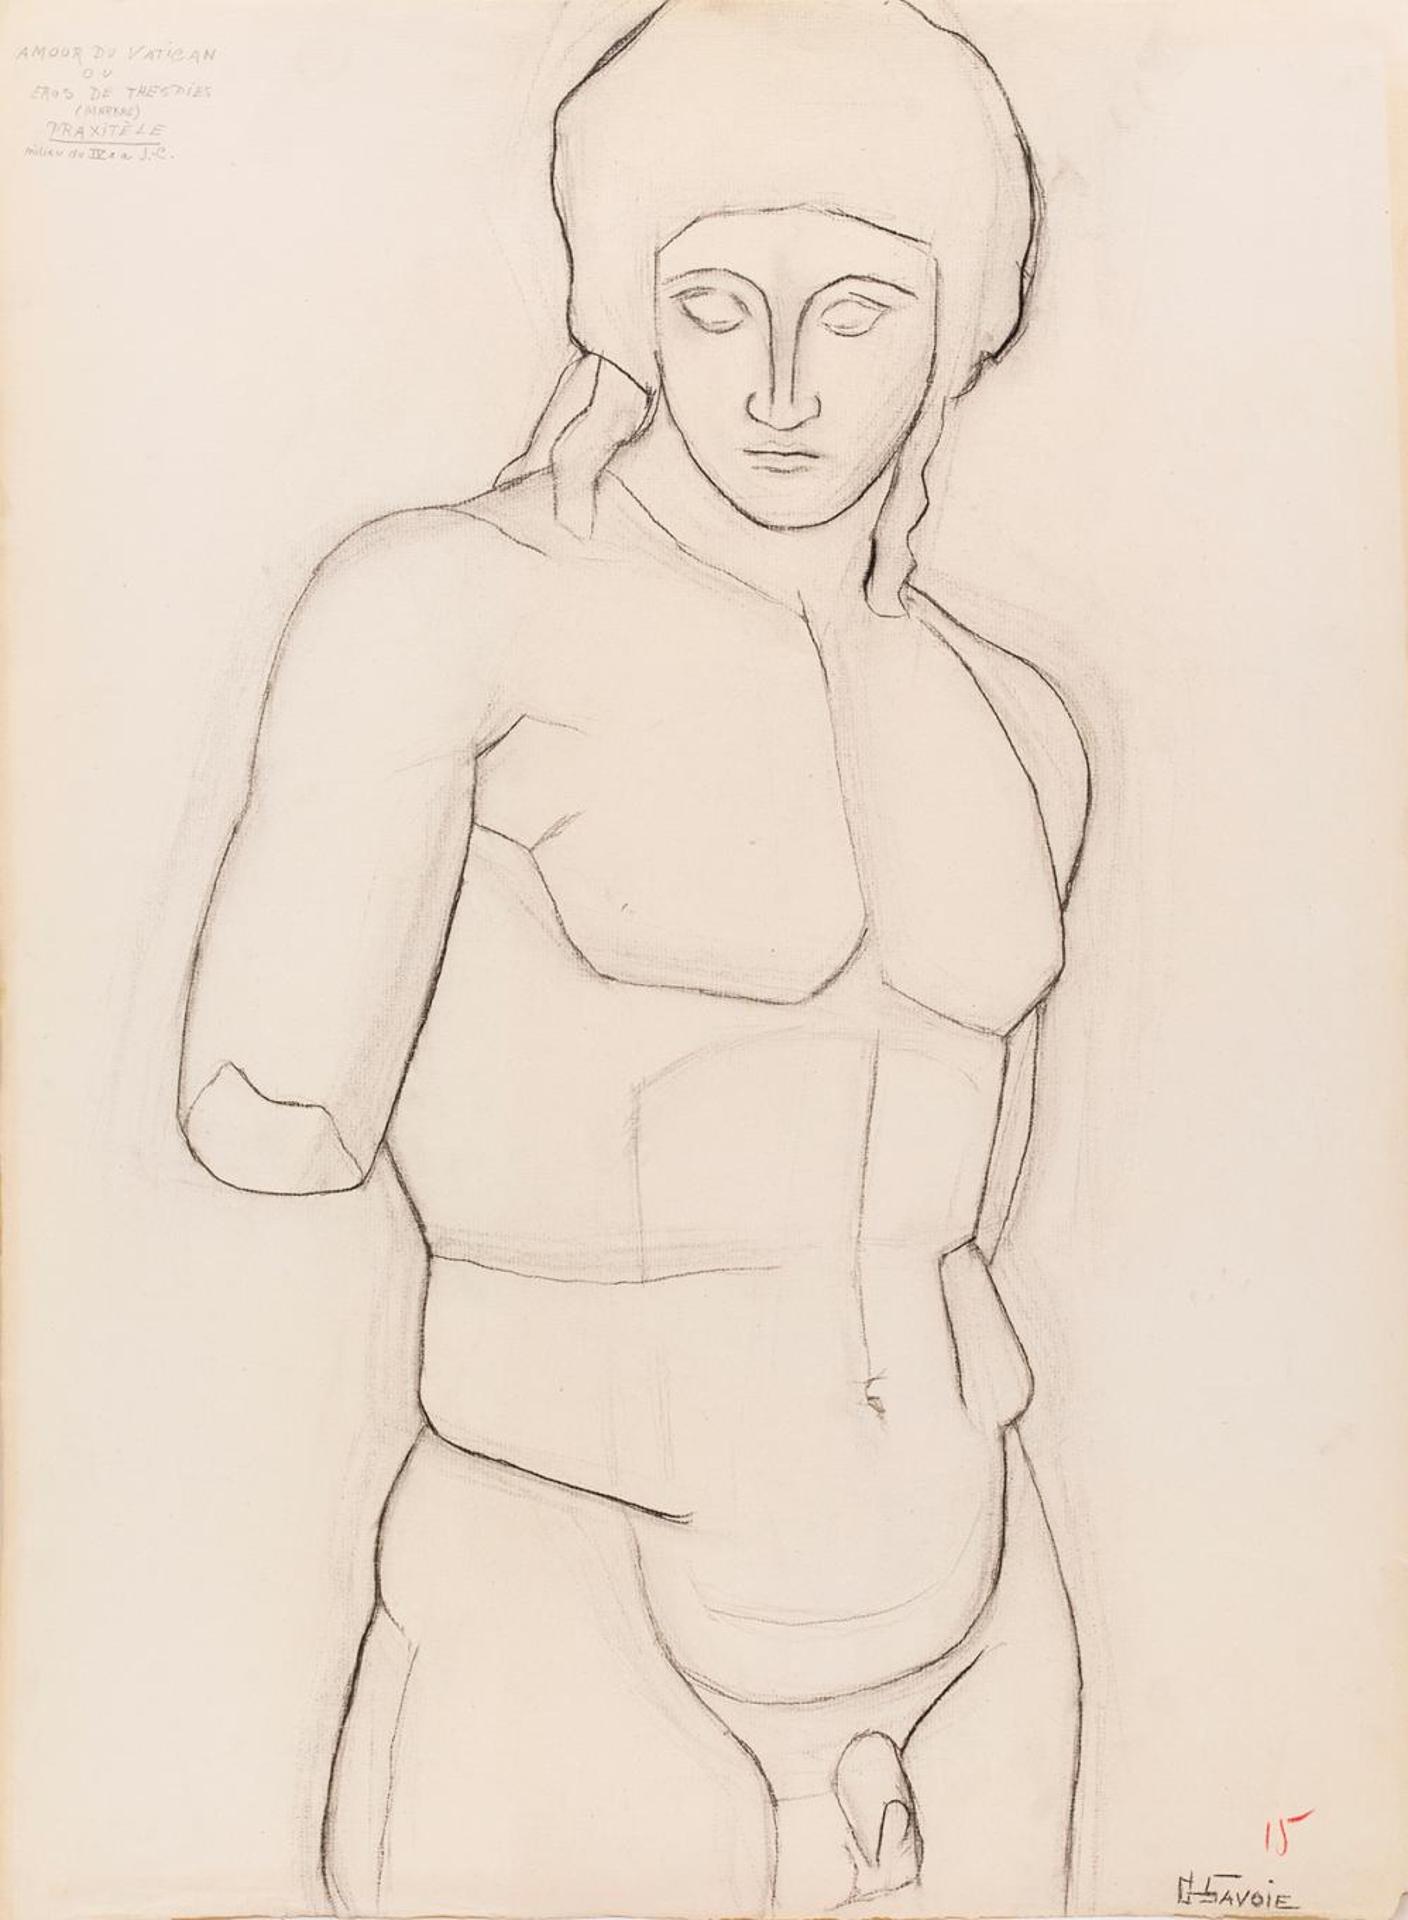 Gerald Savoie (1930) - Untitled